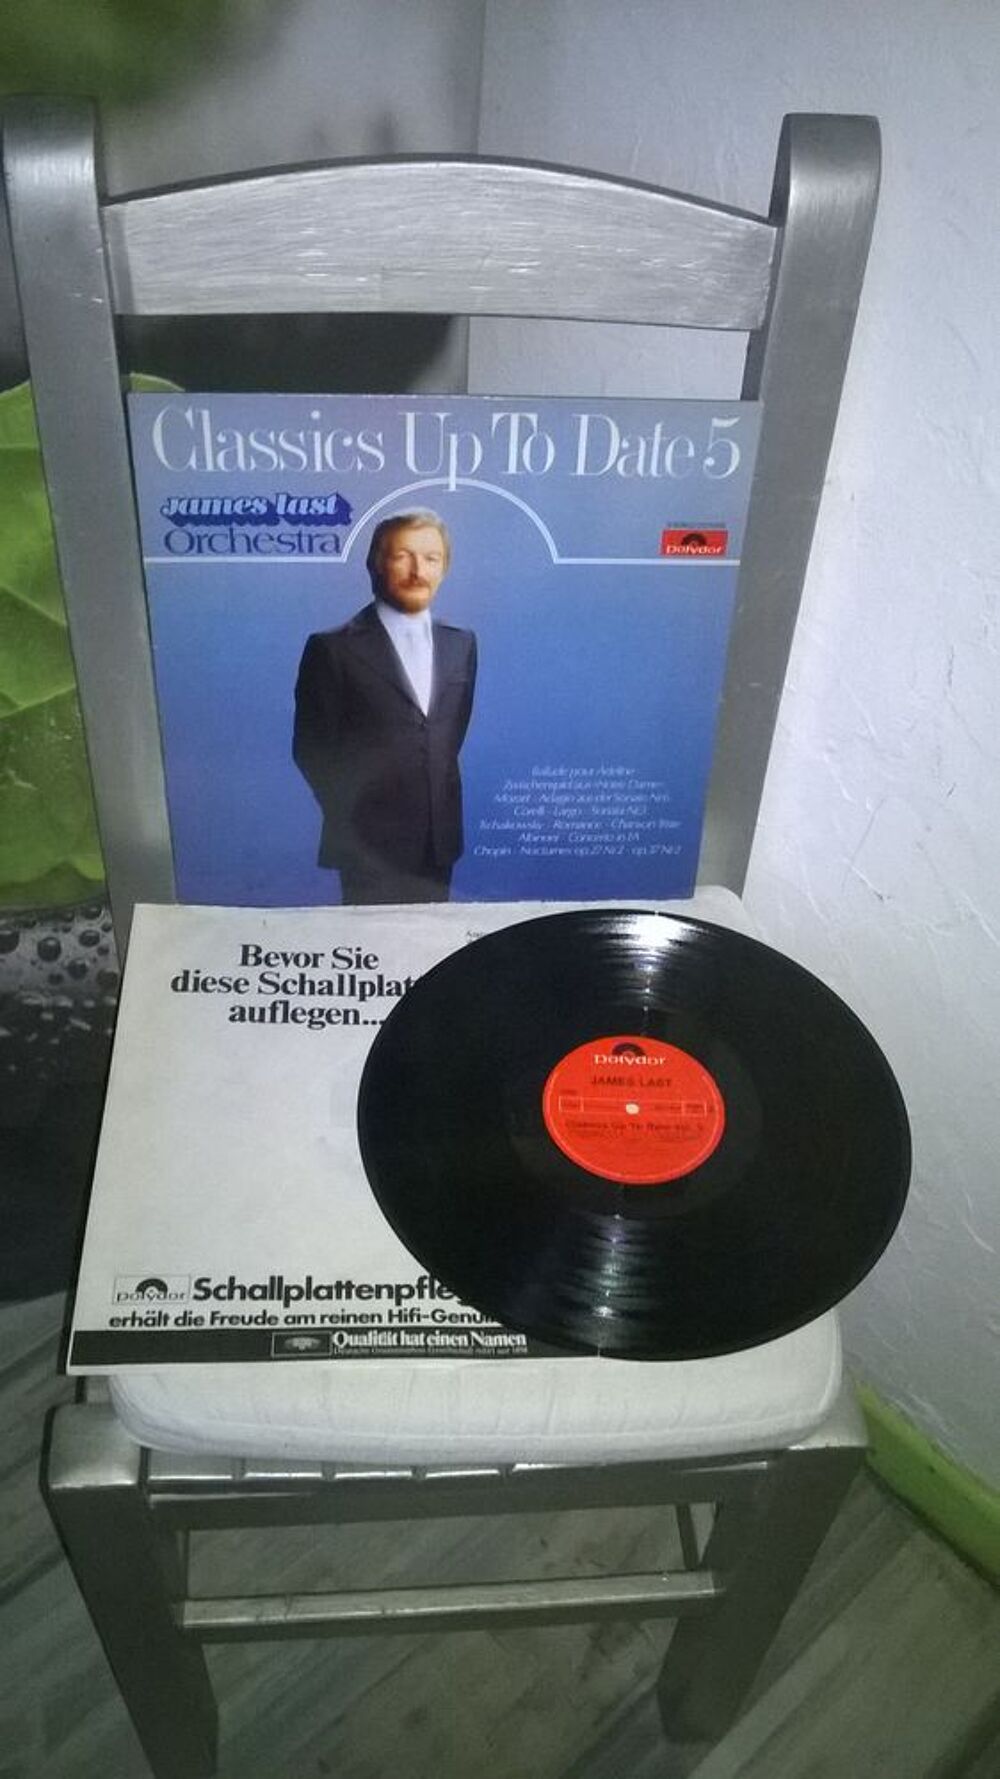 Vinyle James Last
Classics Up To Date 5
1978
Excellent et CD et vinyles